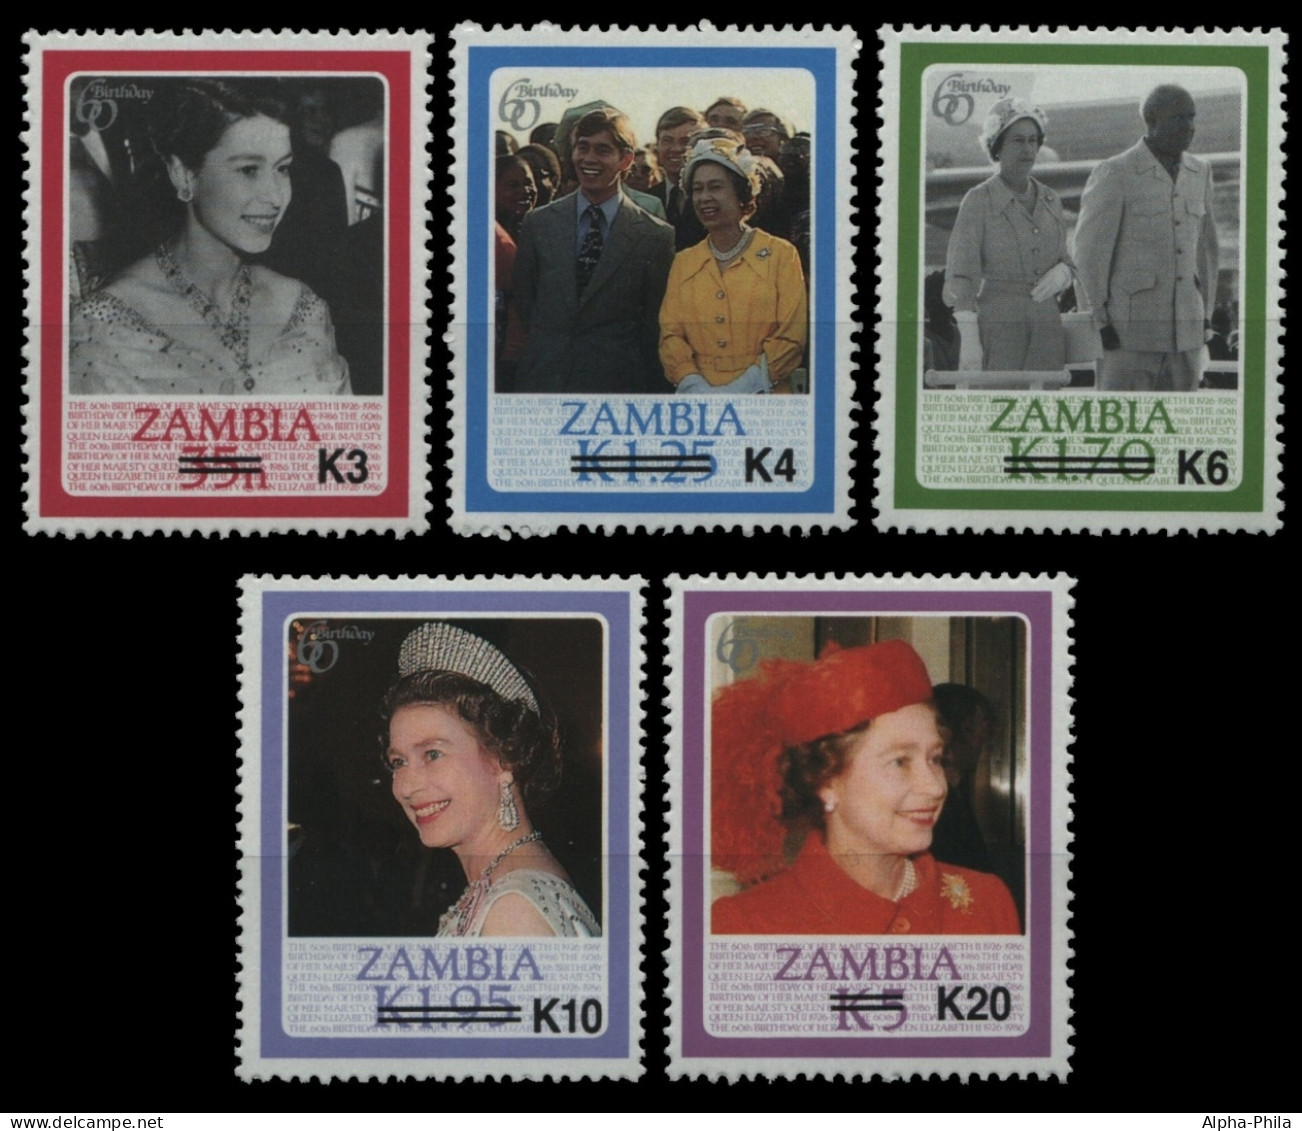 Sambia 1987 - Mi-Nr. 409, 412, 415, 419 & 422 ** - MNH - Queen Elizabeth - Aufdruck - Zambie (1965-...)